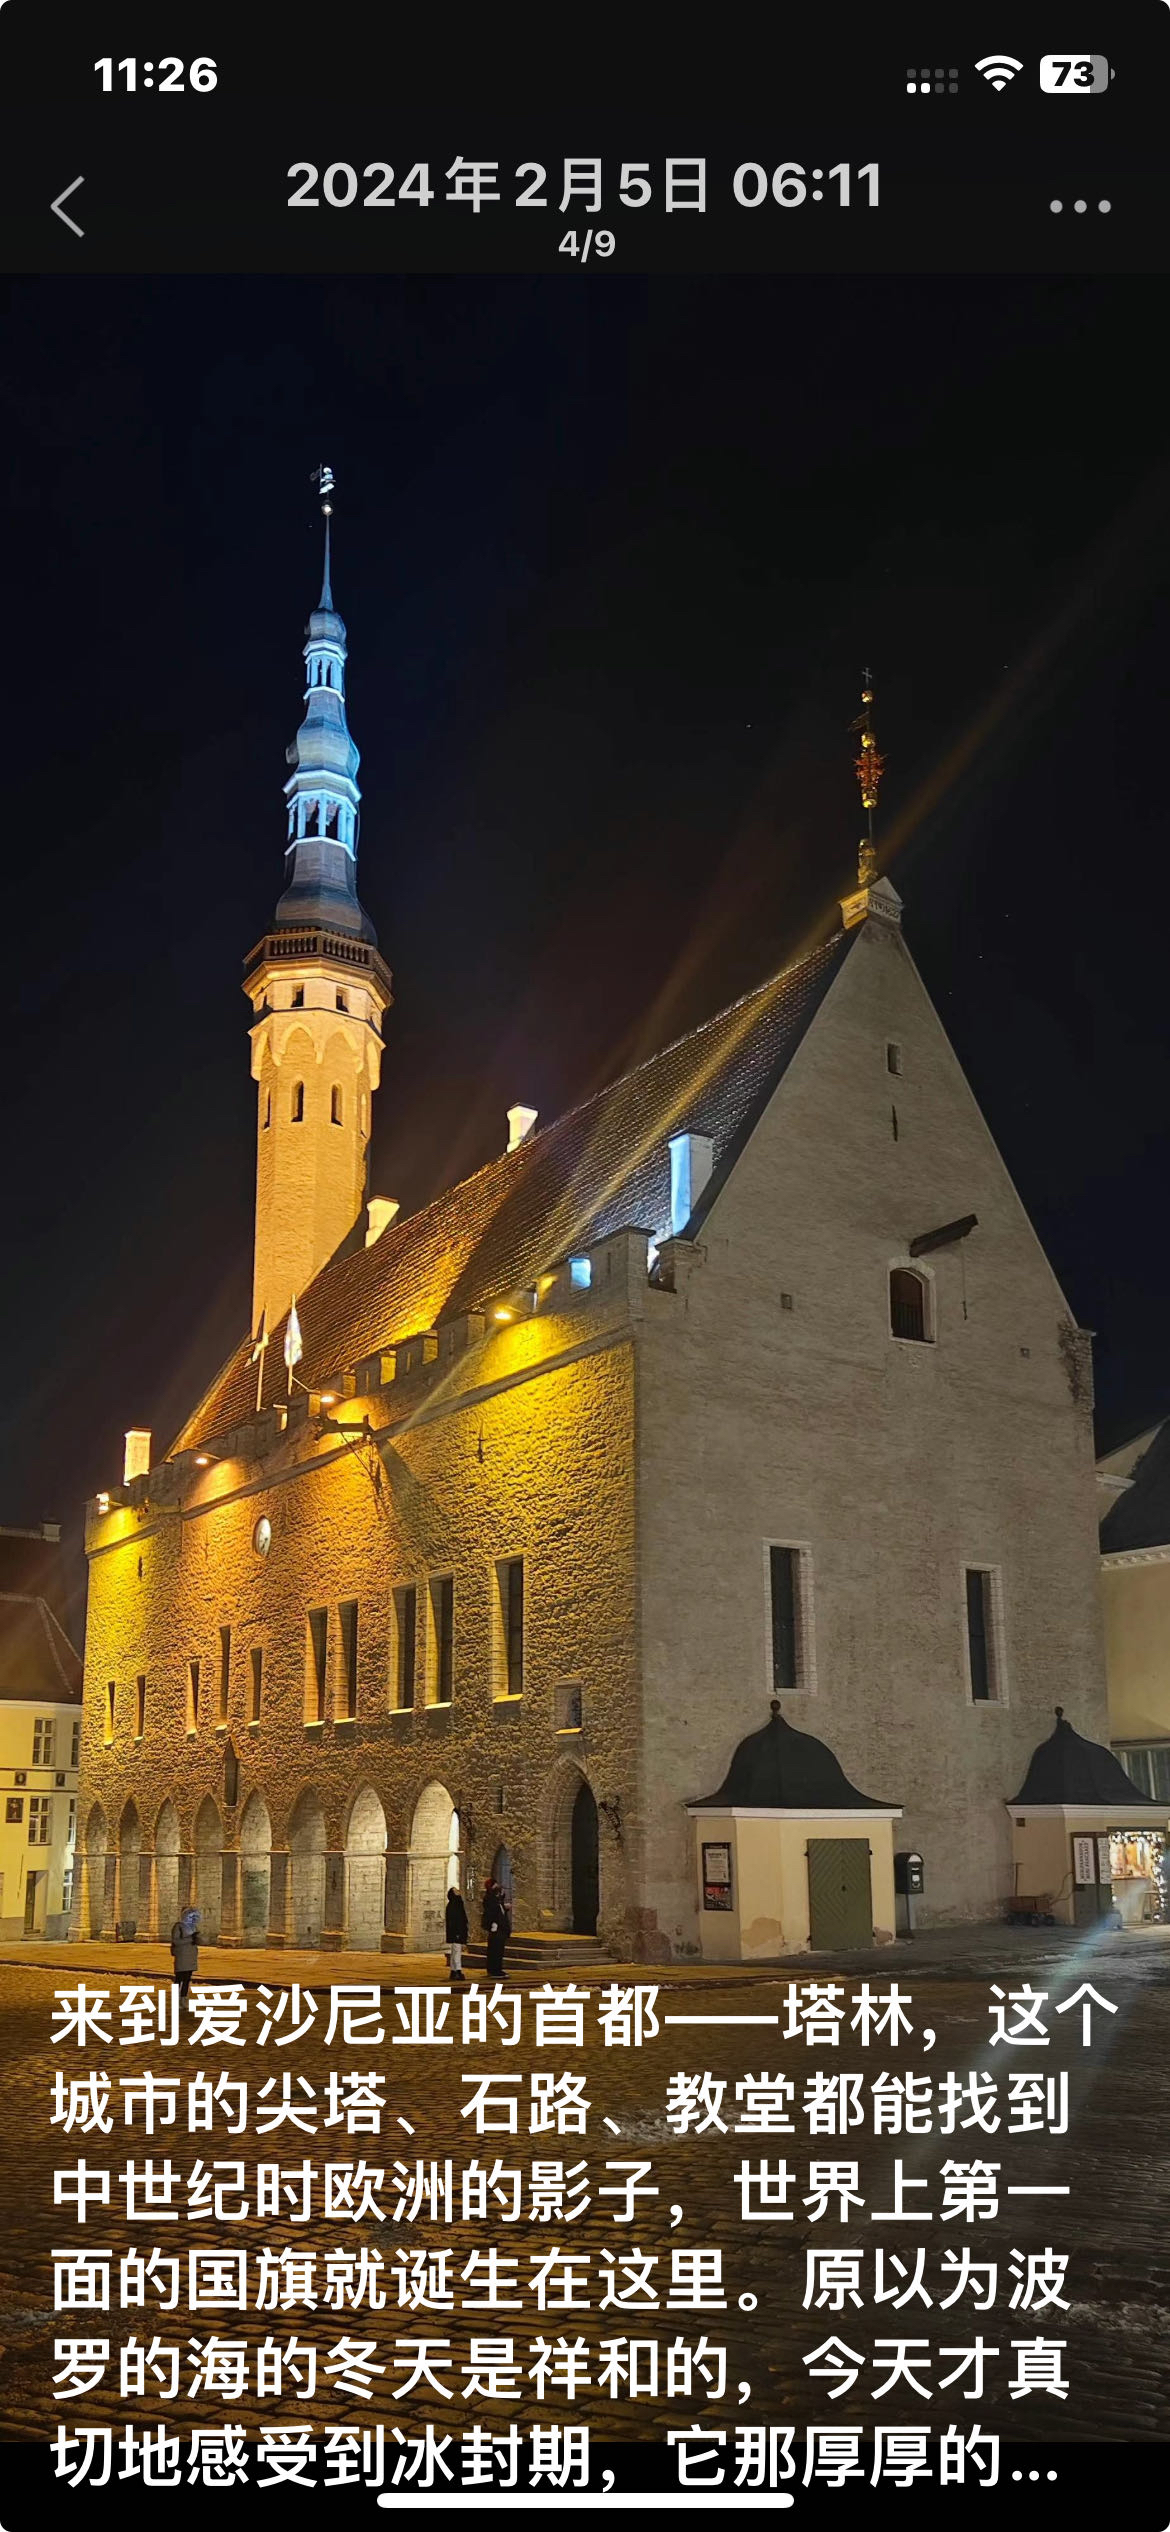 来到爱沙尼亚的首都——塔林，这个城市的尖塔、石路、教堂都能找到中世纪时欧洲的影子，世界上第一面的国旗